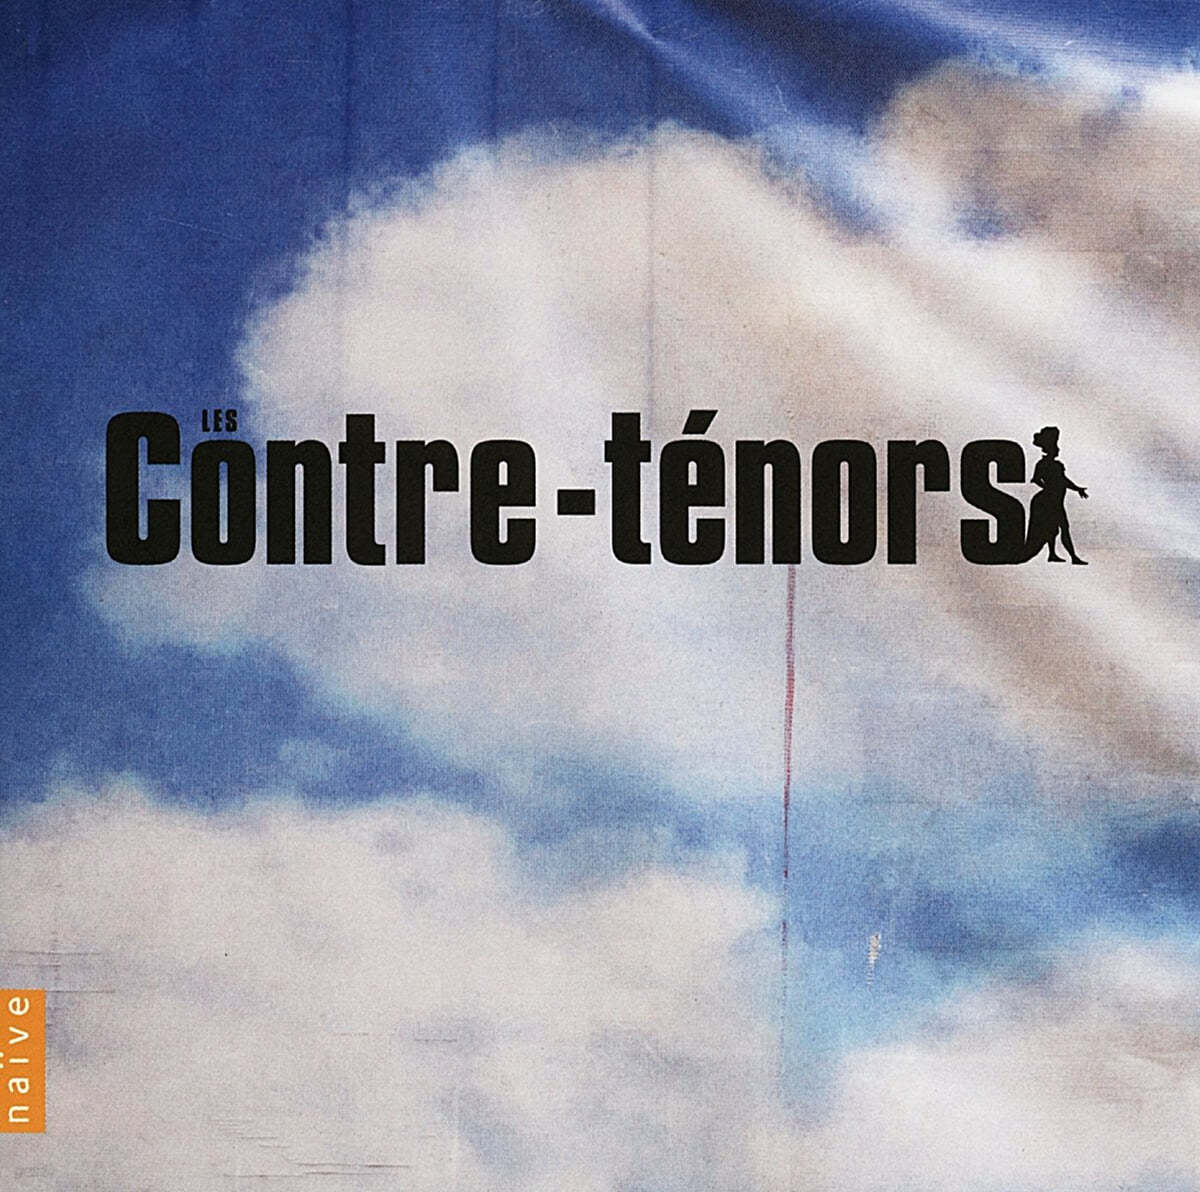 카운터테너 모음집 (Les Contre-Tenors) 